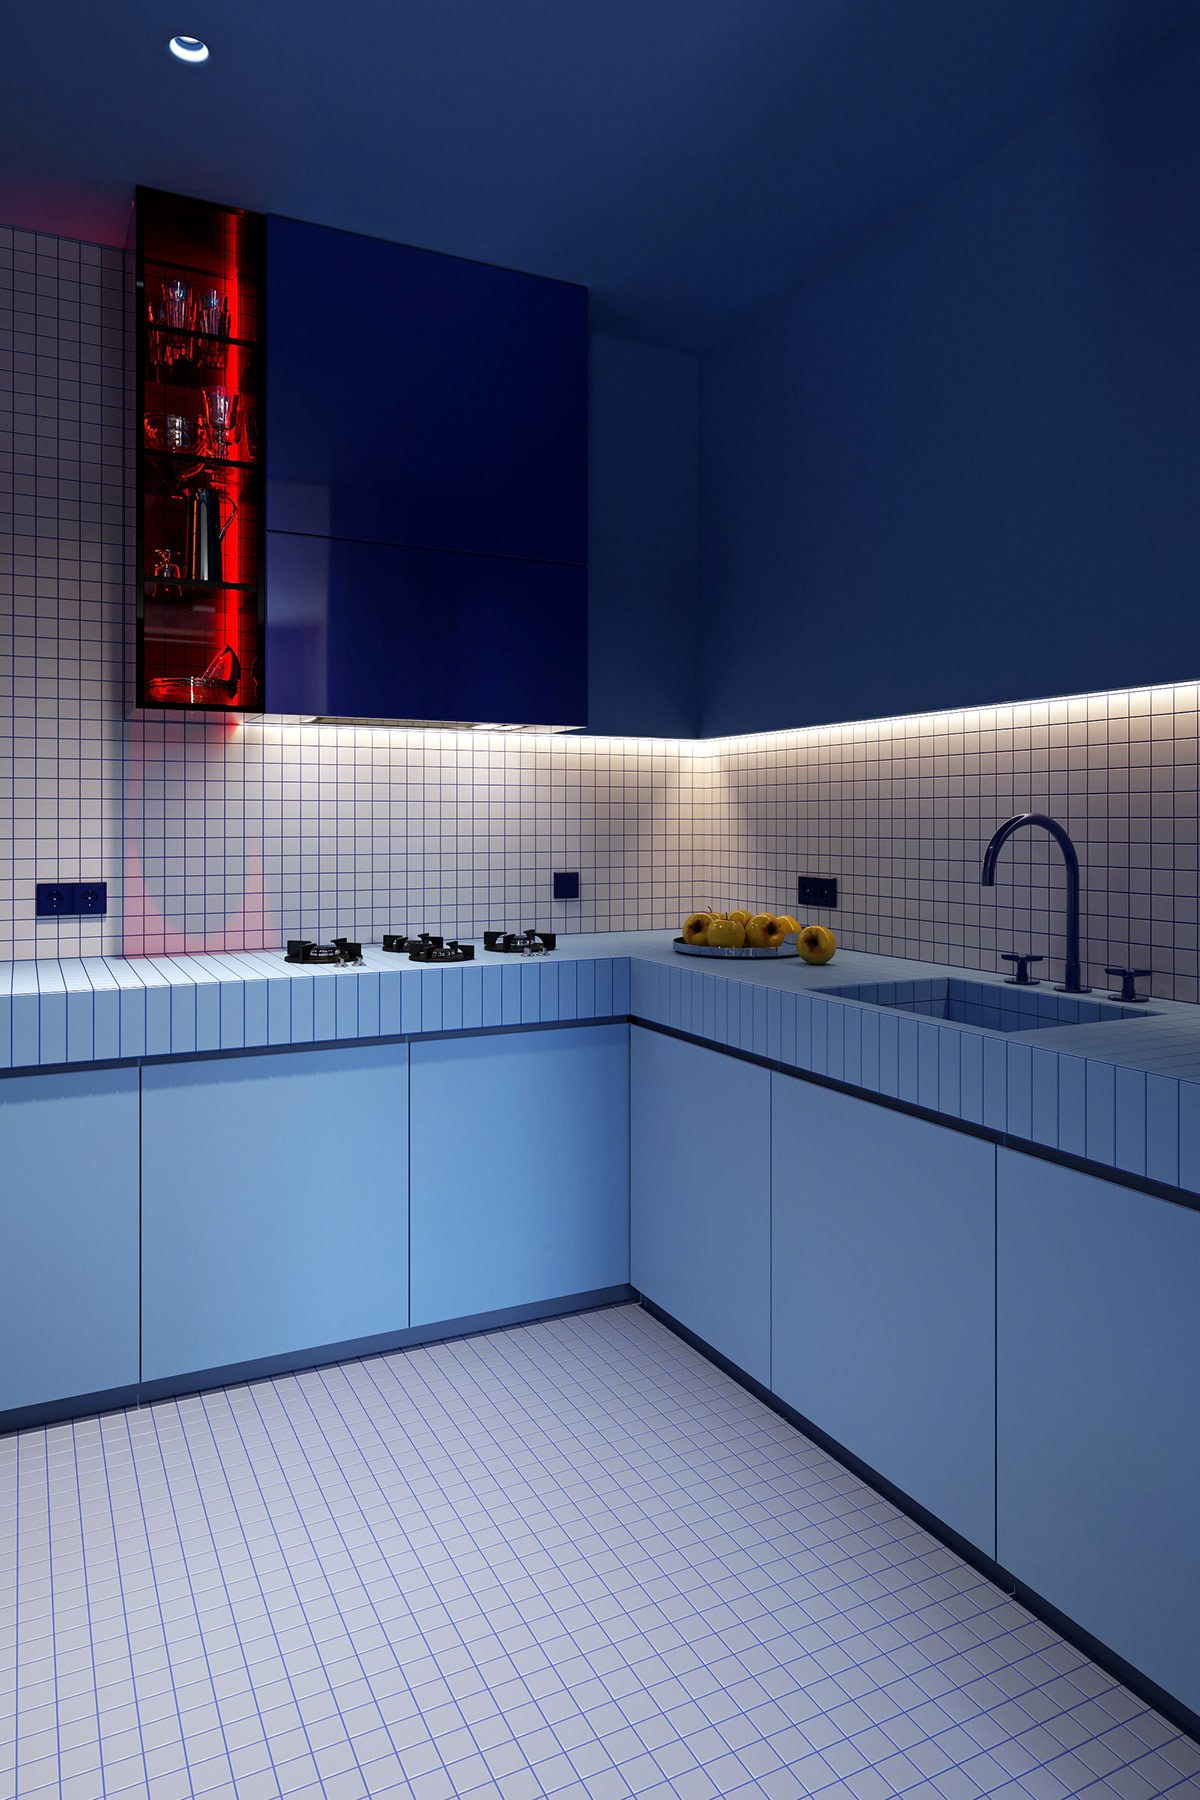 Các sắc thái khác nhau của màu xanh lam được phối kết tinh tế trong phòng bếp, tương phản với hốc tủ màu đỏ ruby ấn tượng.